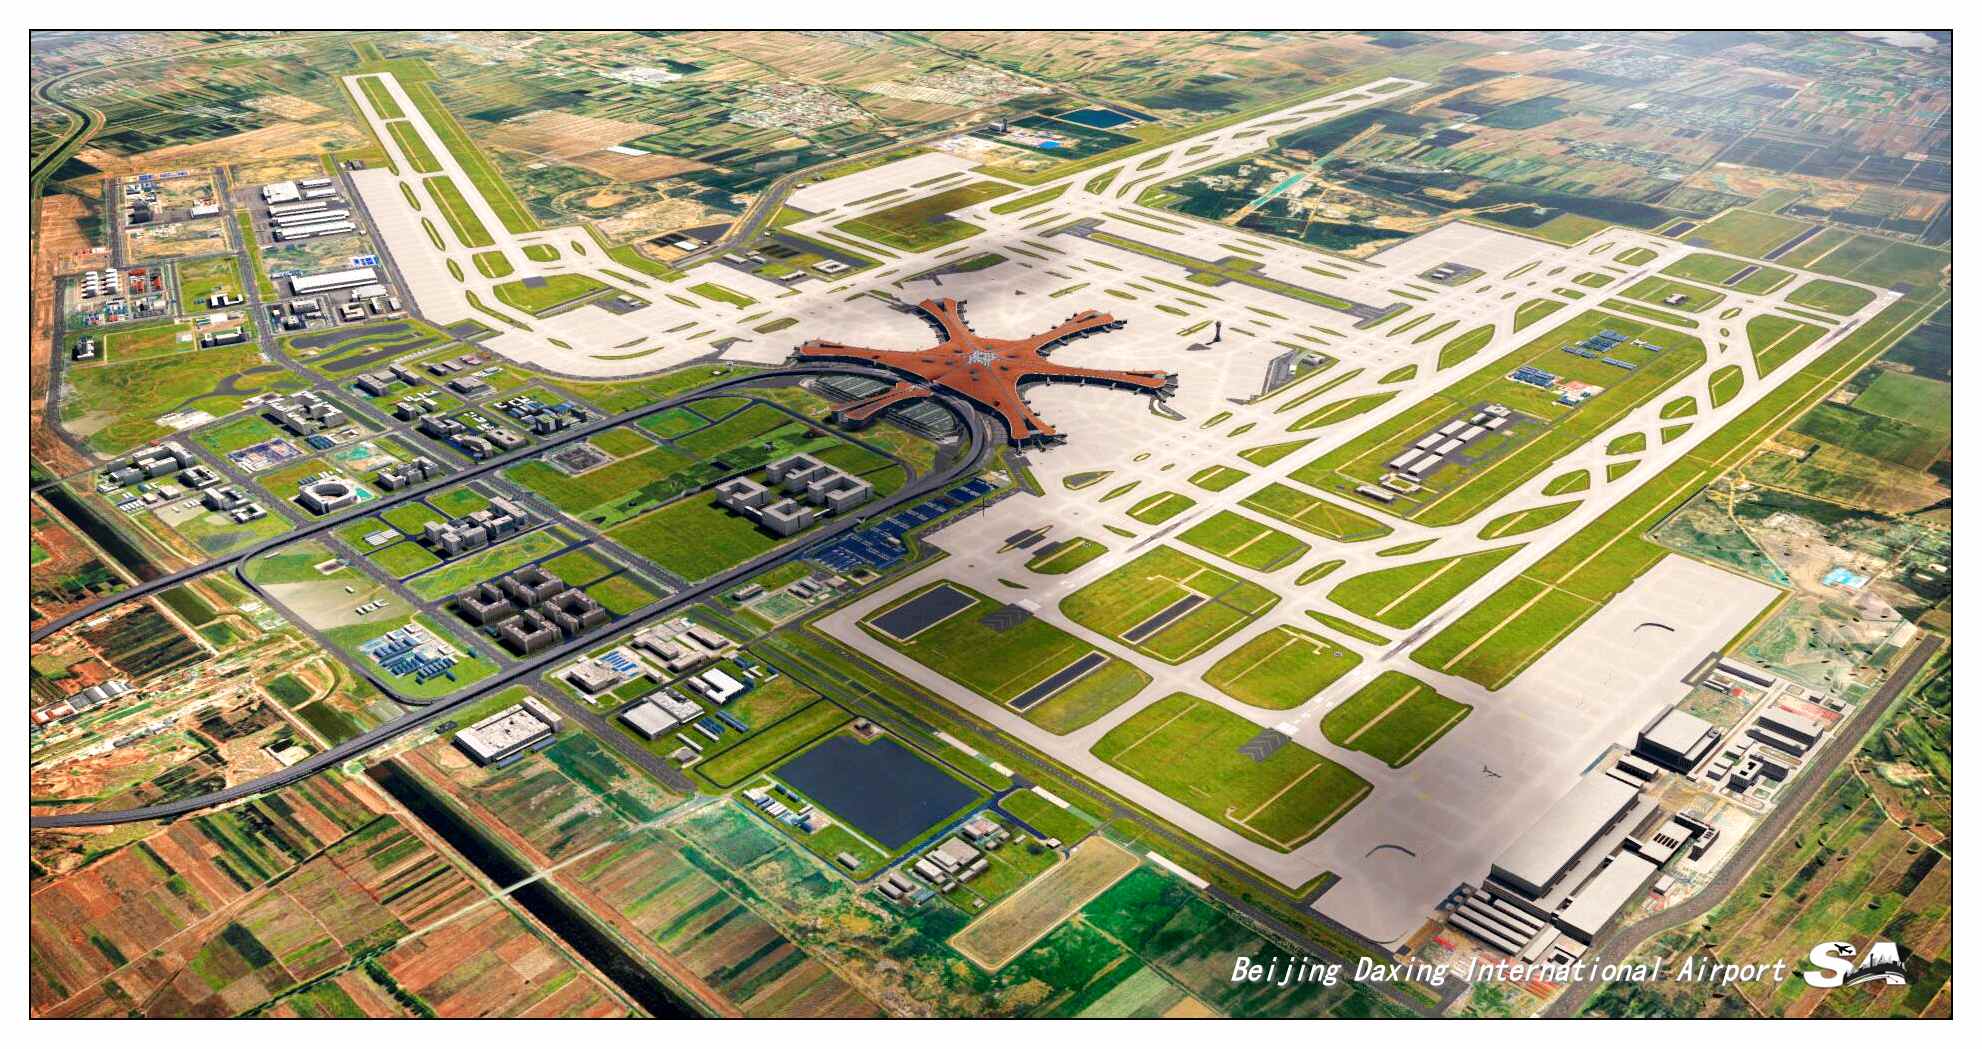 【X-Plane】ZBAD北京大兴国际机场-正式发布-4001 